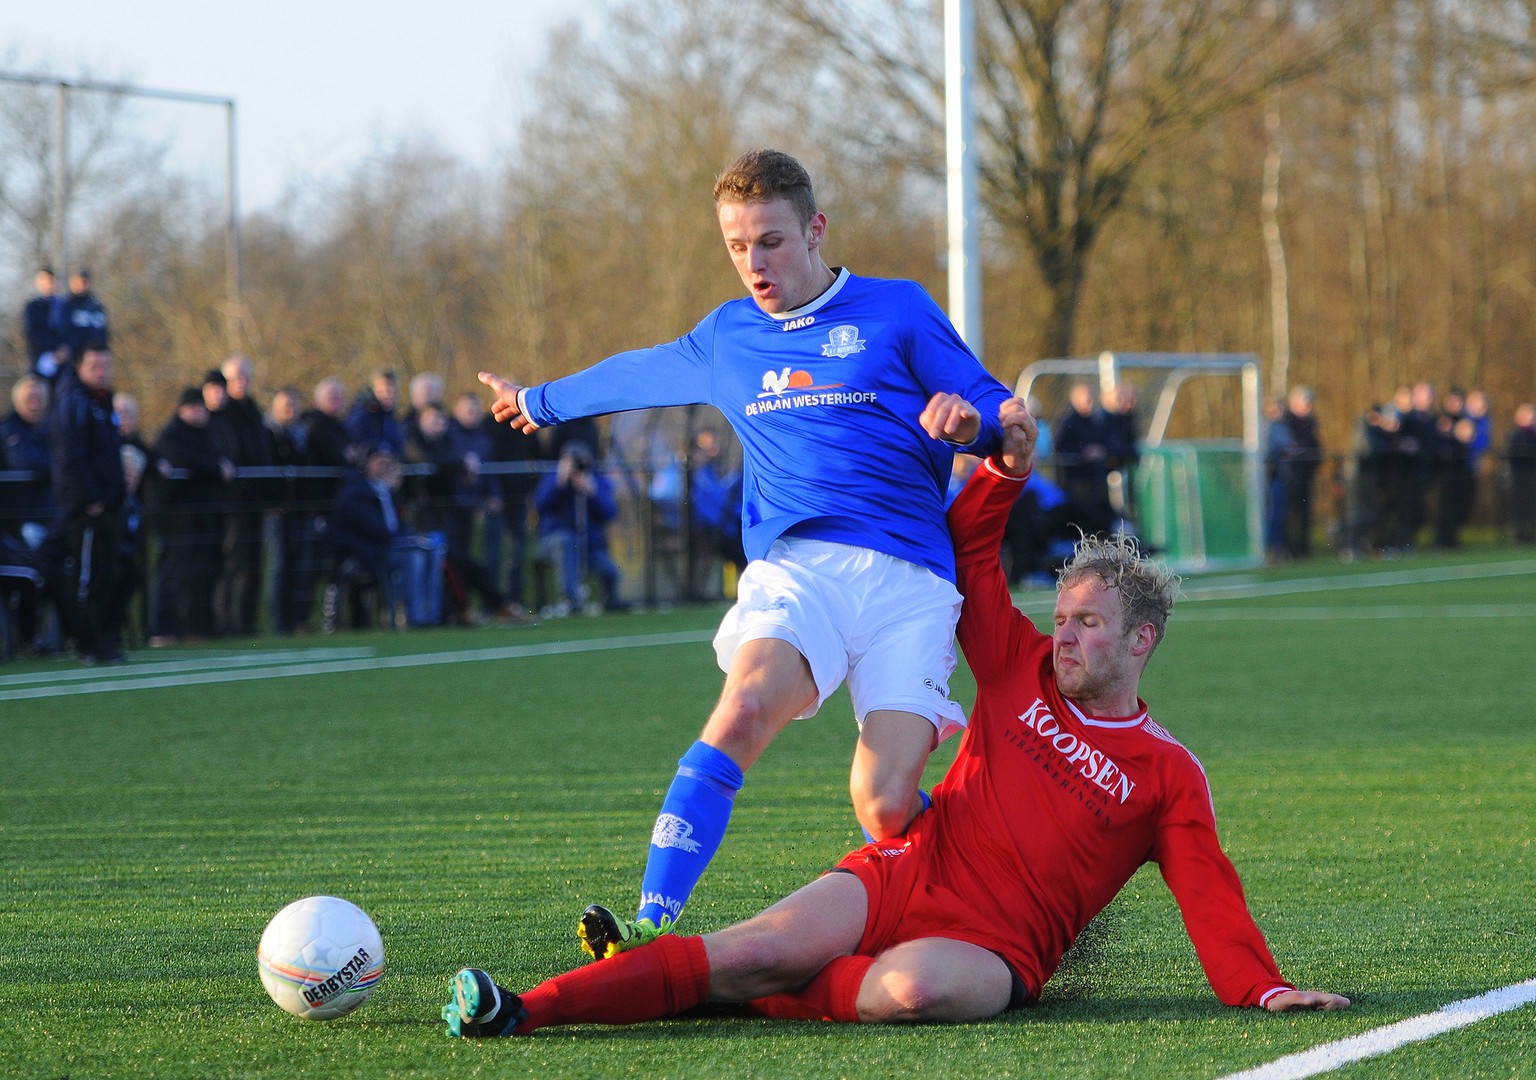 Opkomende verdediger Wim de Vries wordt van de bal gegleden.